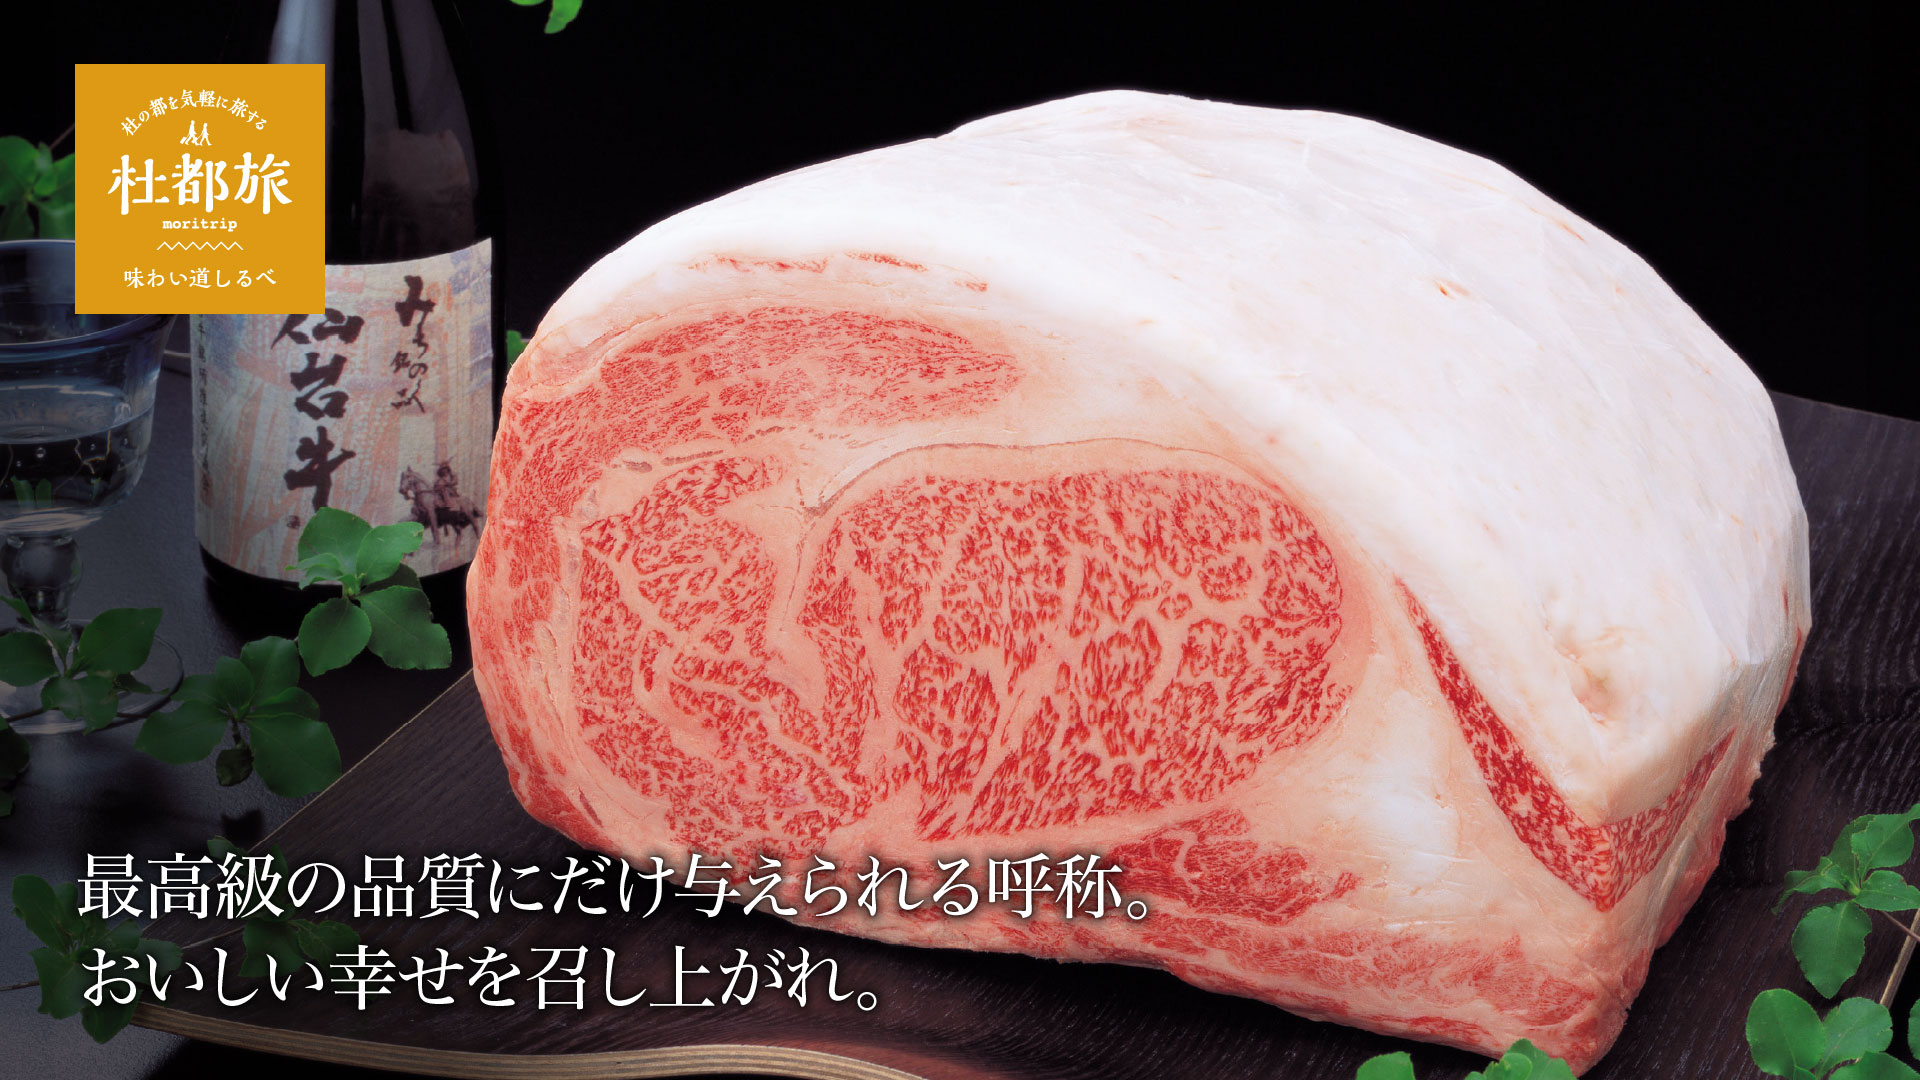 仙台牛〜最高級の品質にだけ与えられる呼称。おいしい幸せを召し上がれ。